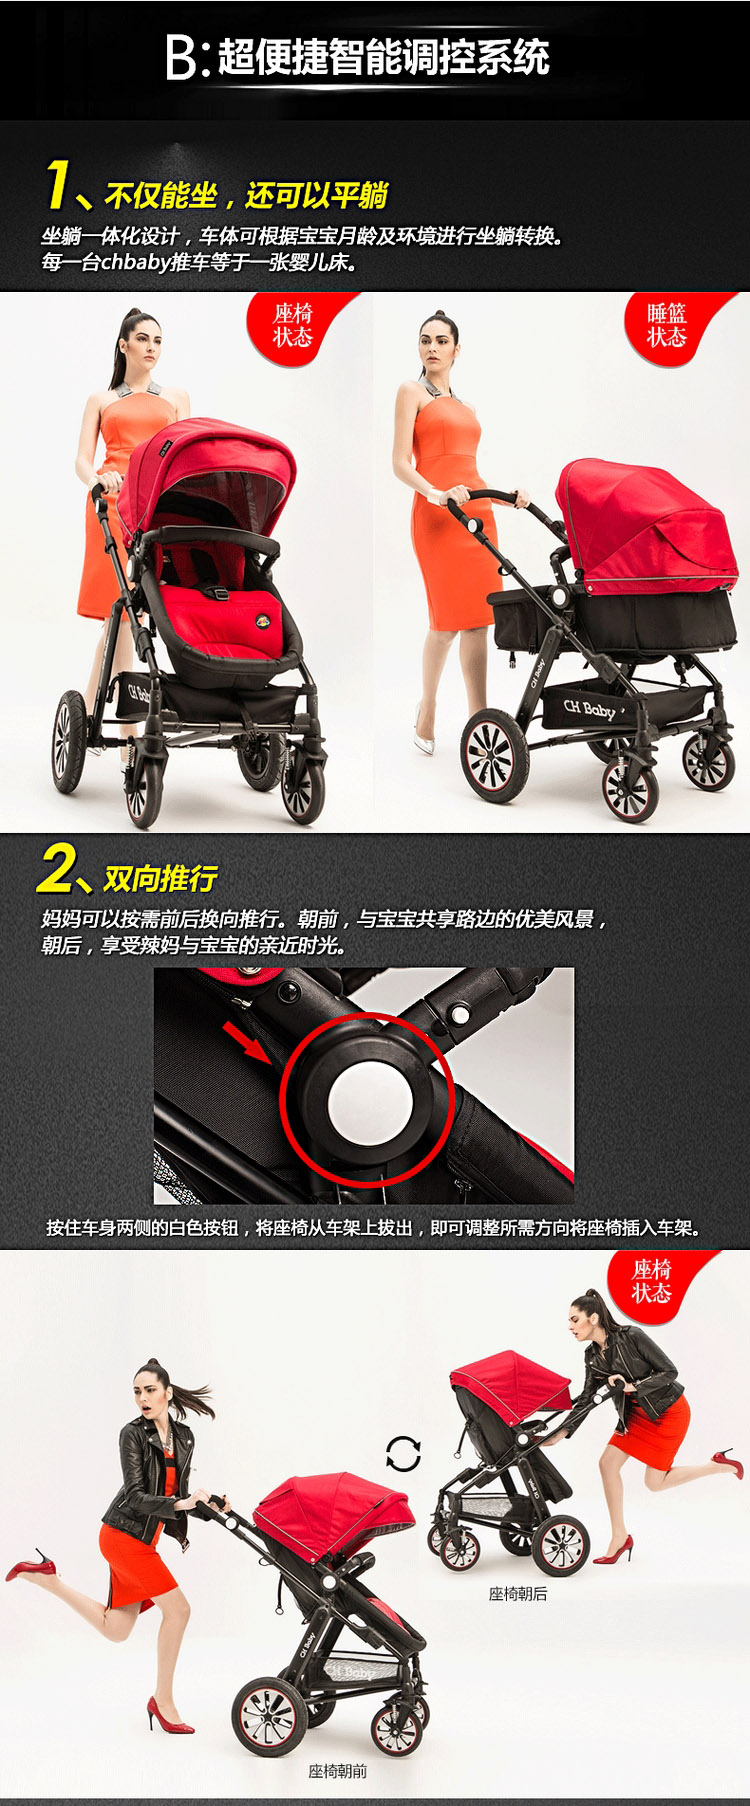 CHBABY豪华避震高景观充气轮双向婴儿推车A725A运动版 红色